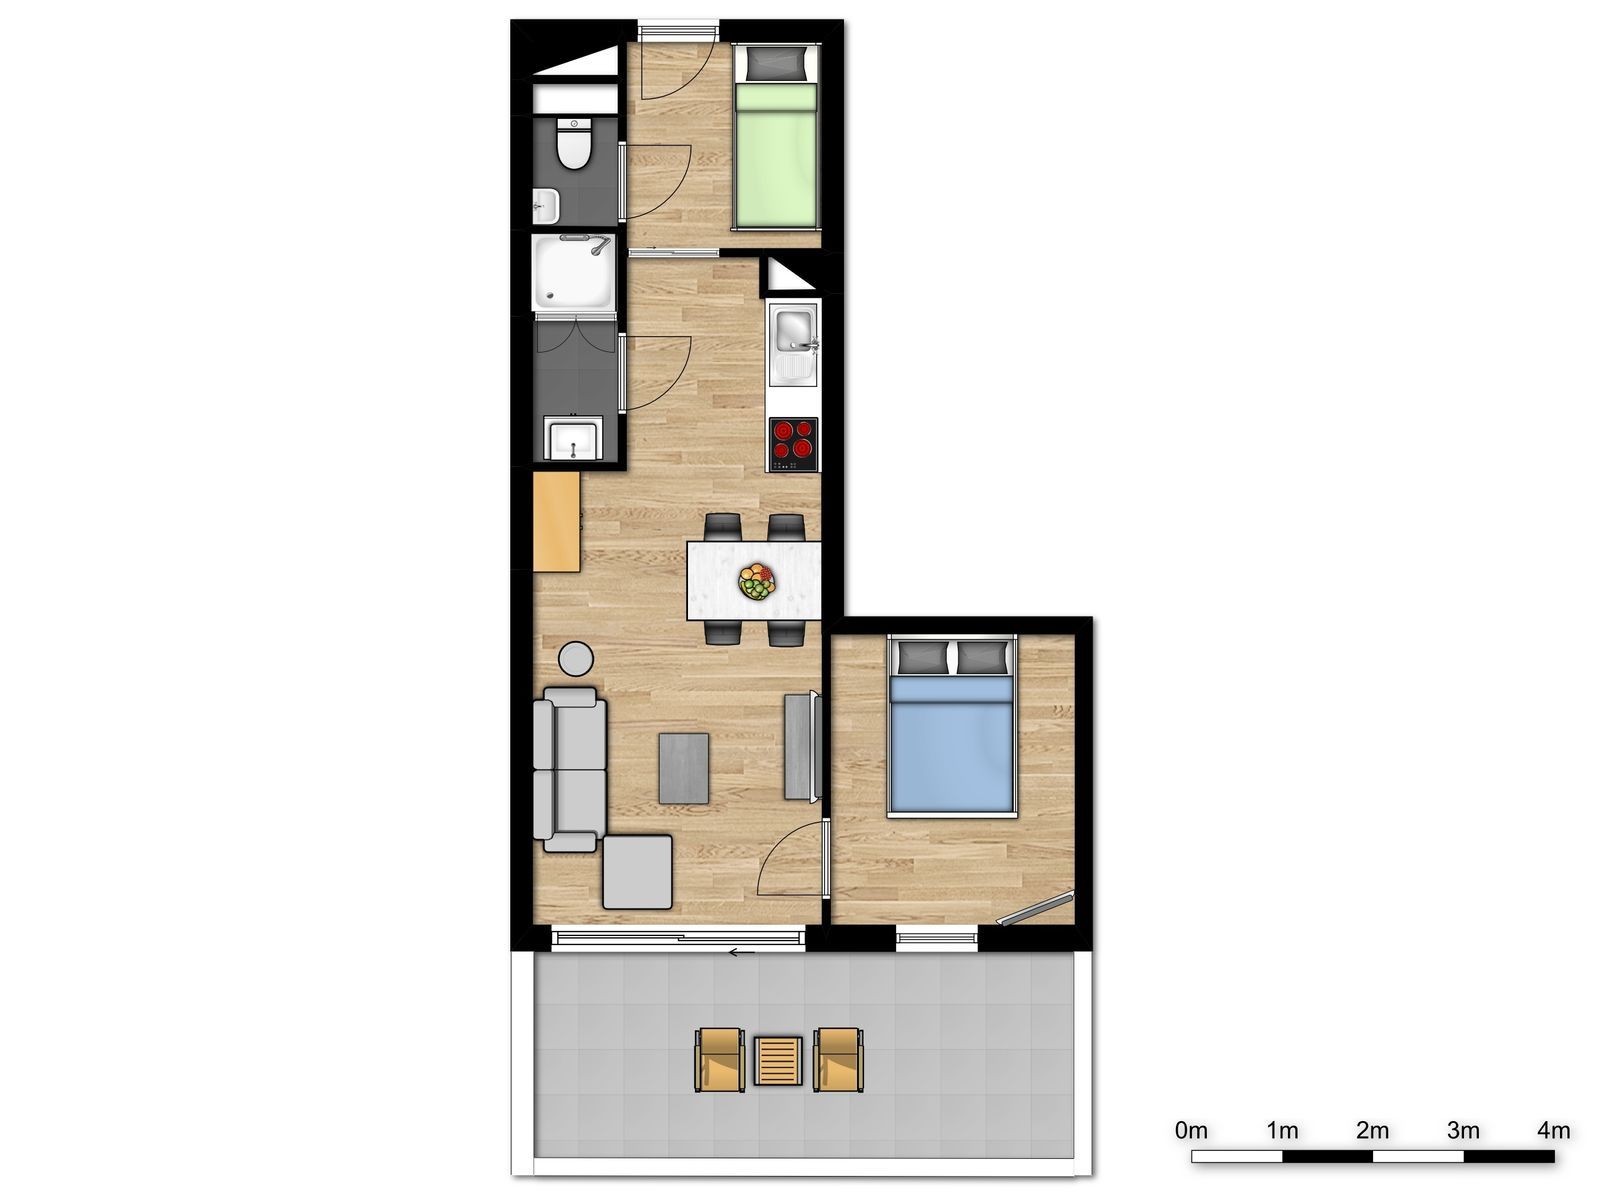 Appartement pour 4 personnes avec lit double et un lit superposé